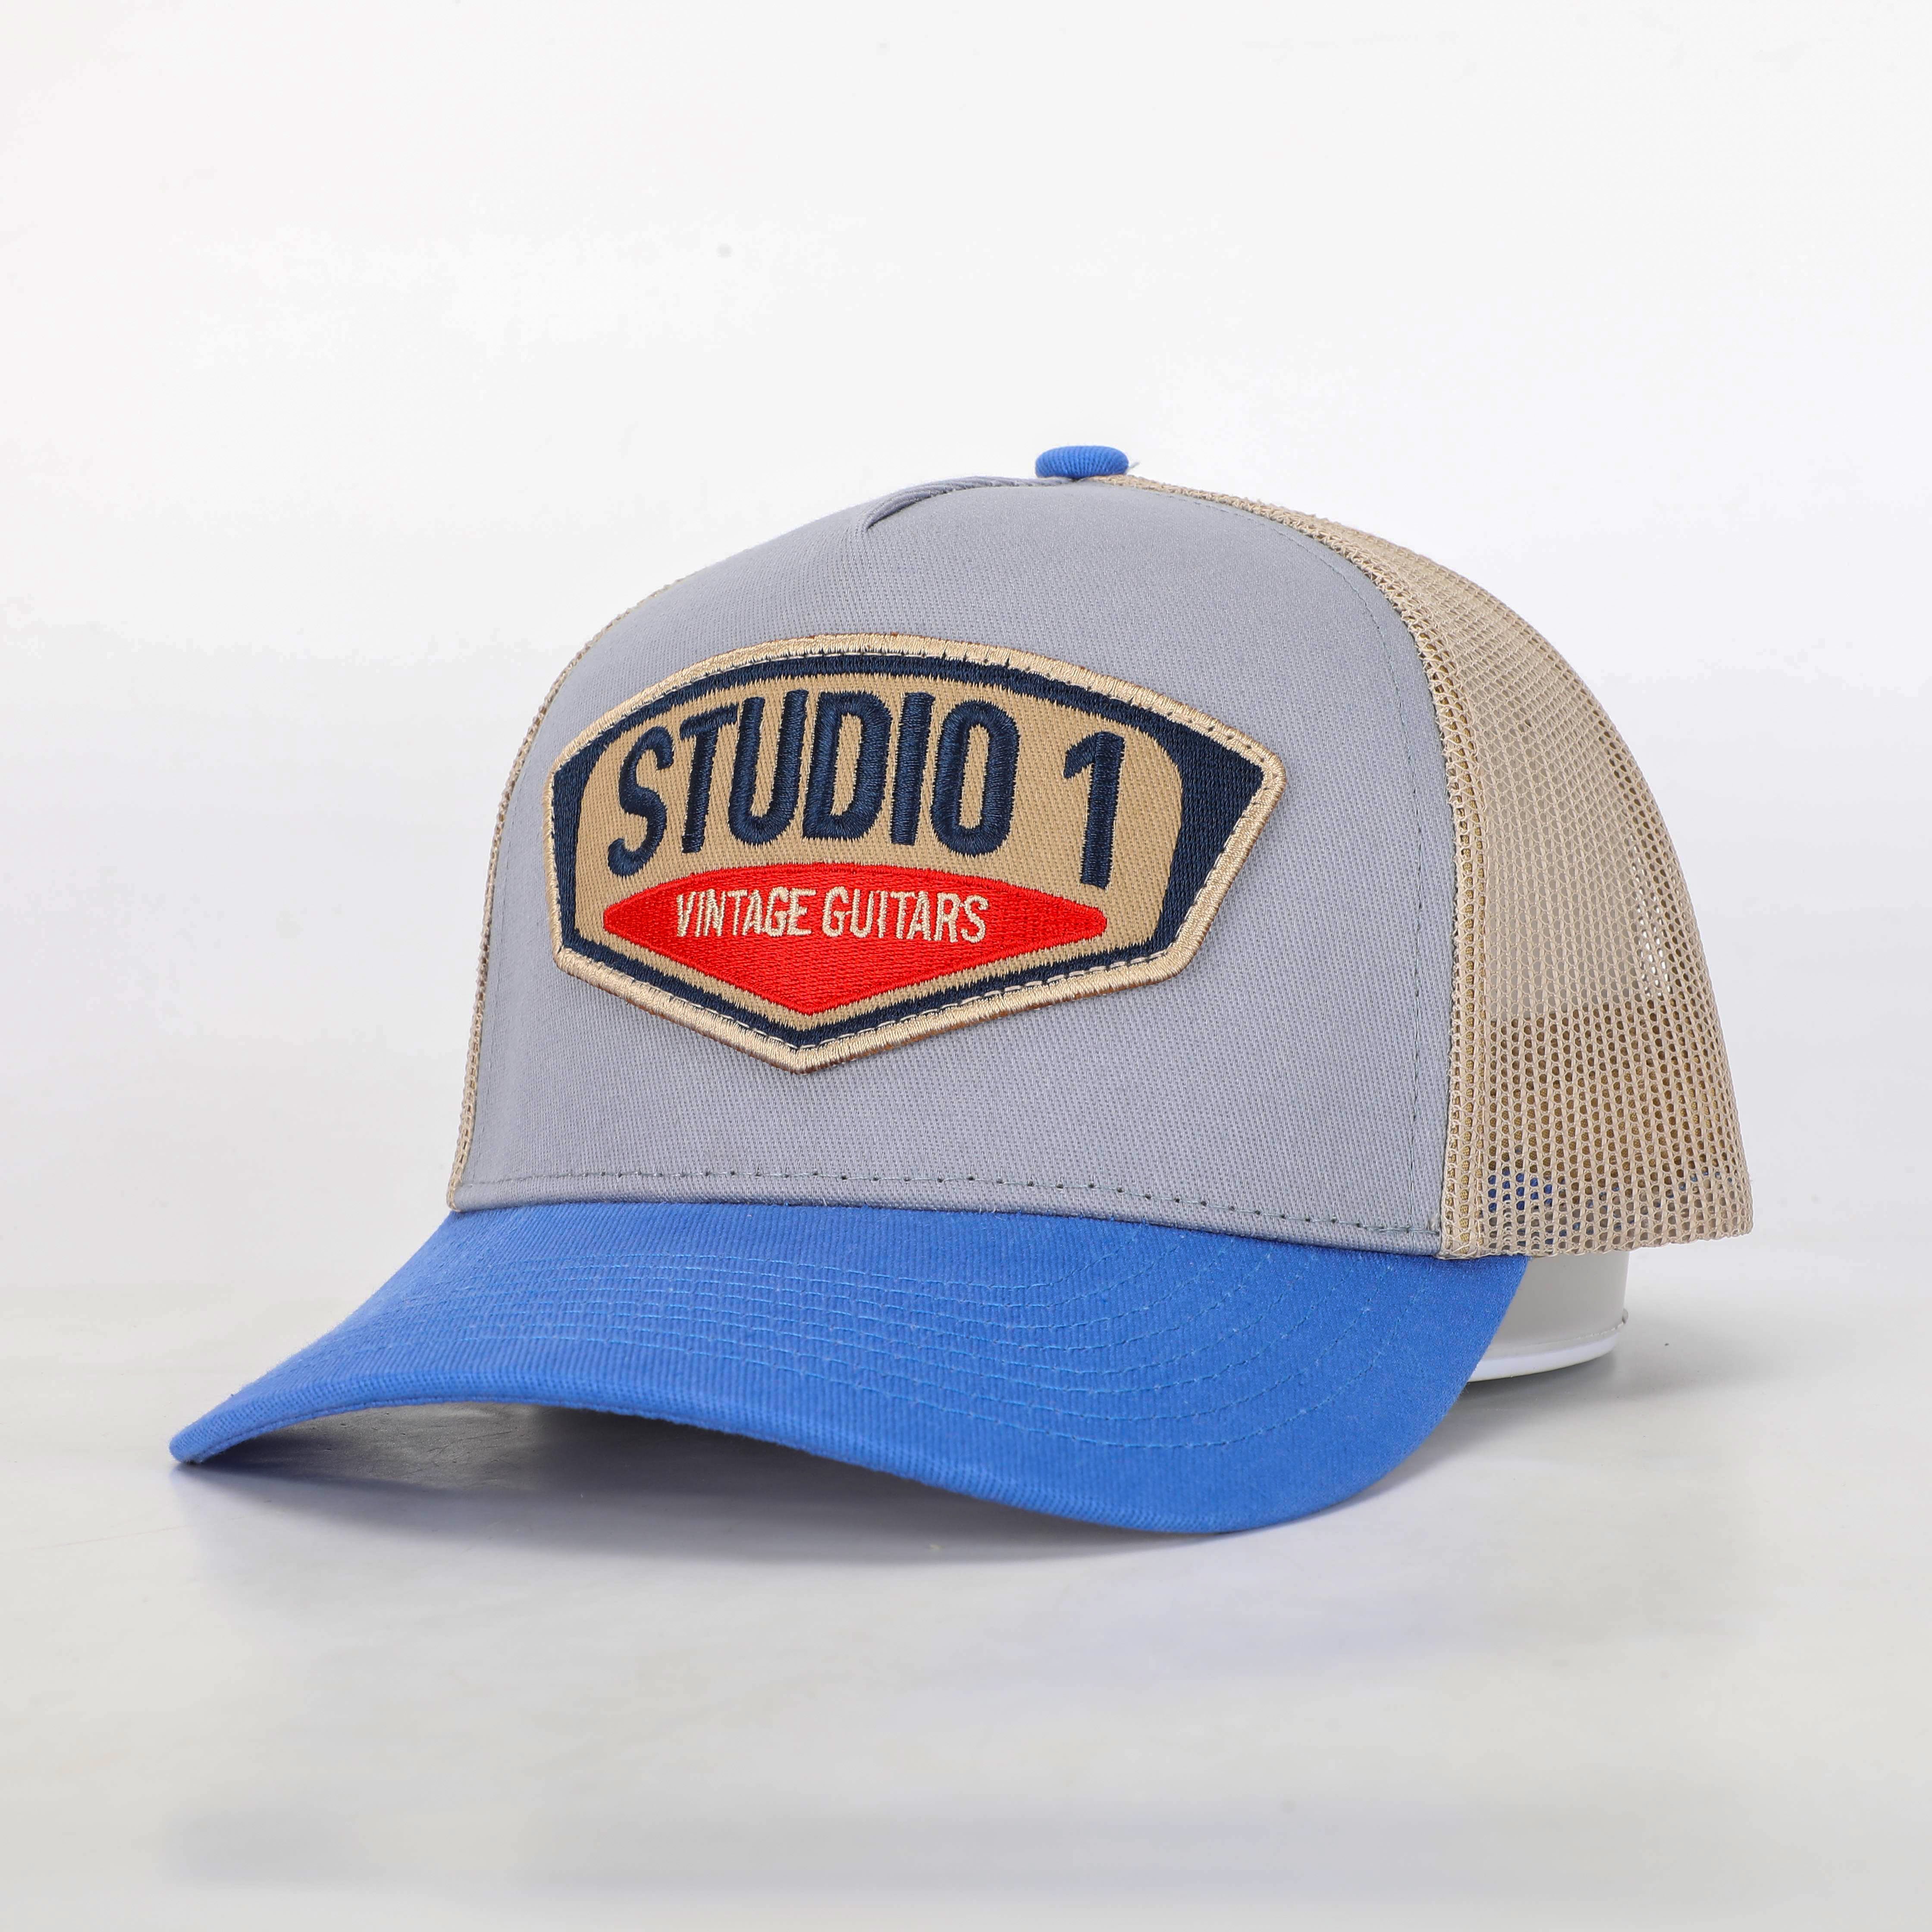 Trucker Cap - Studio 1